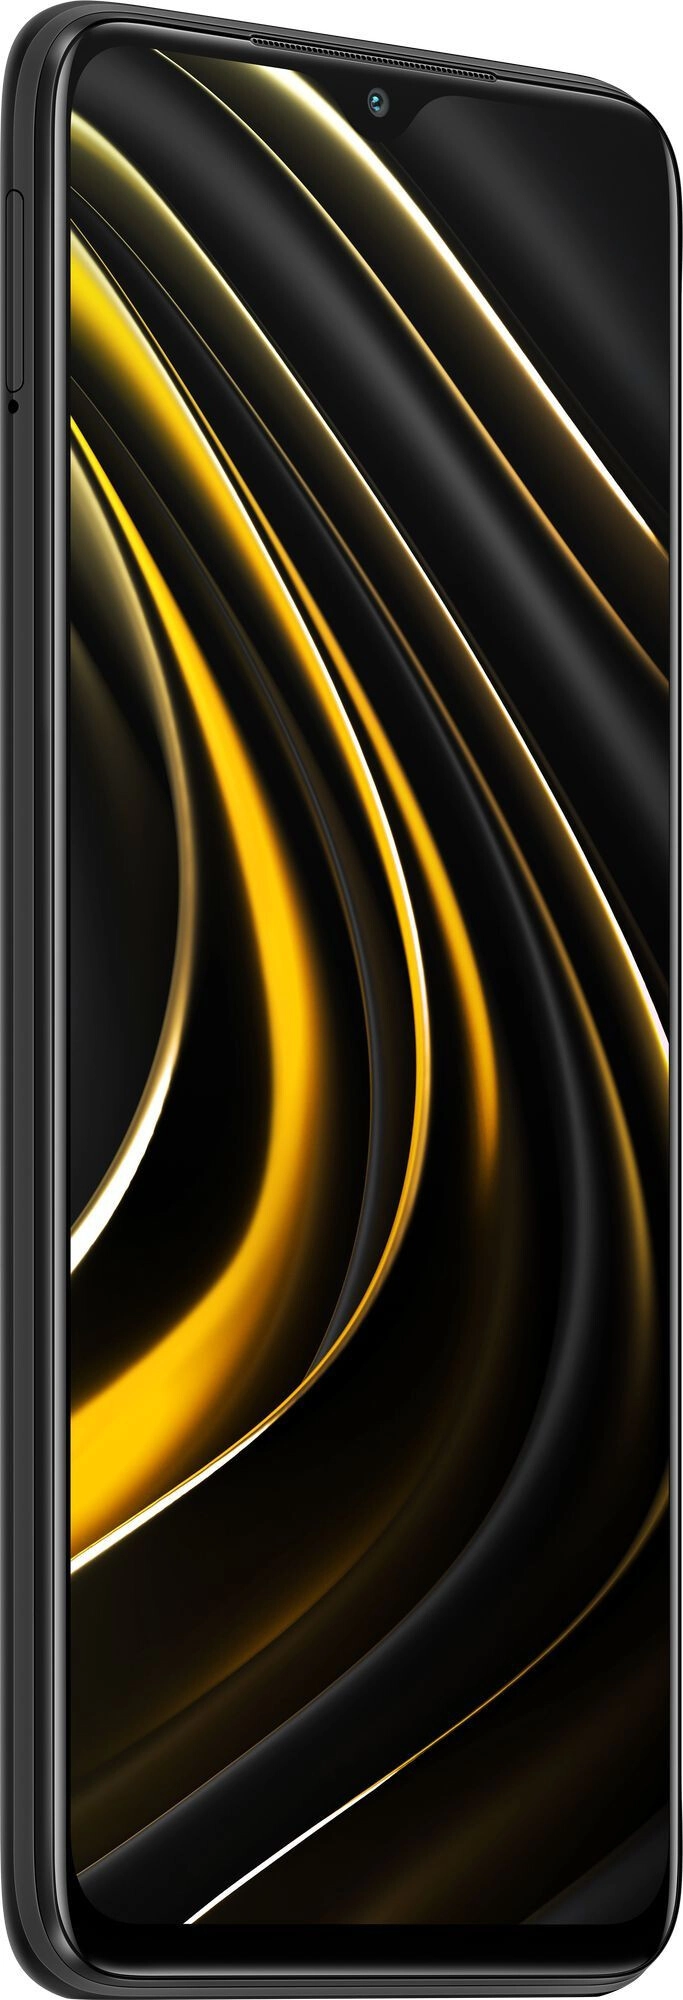 Цена Смартфон Xiaomi Poco M3 4/64Gb Black